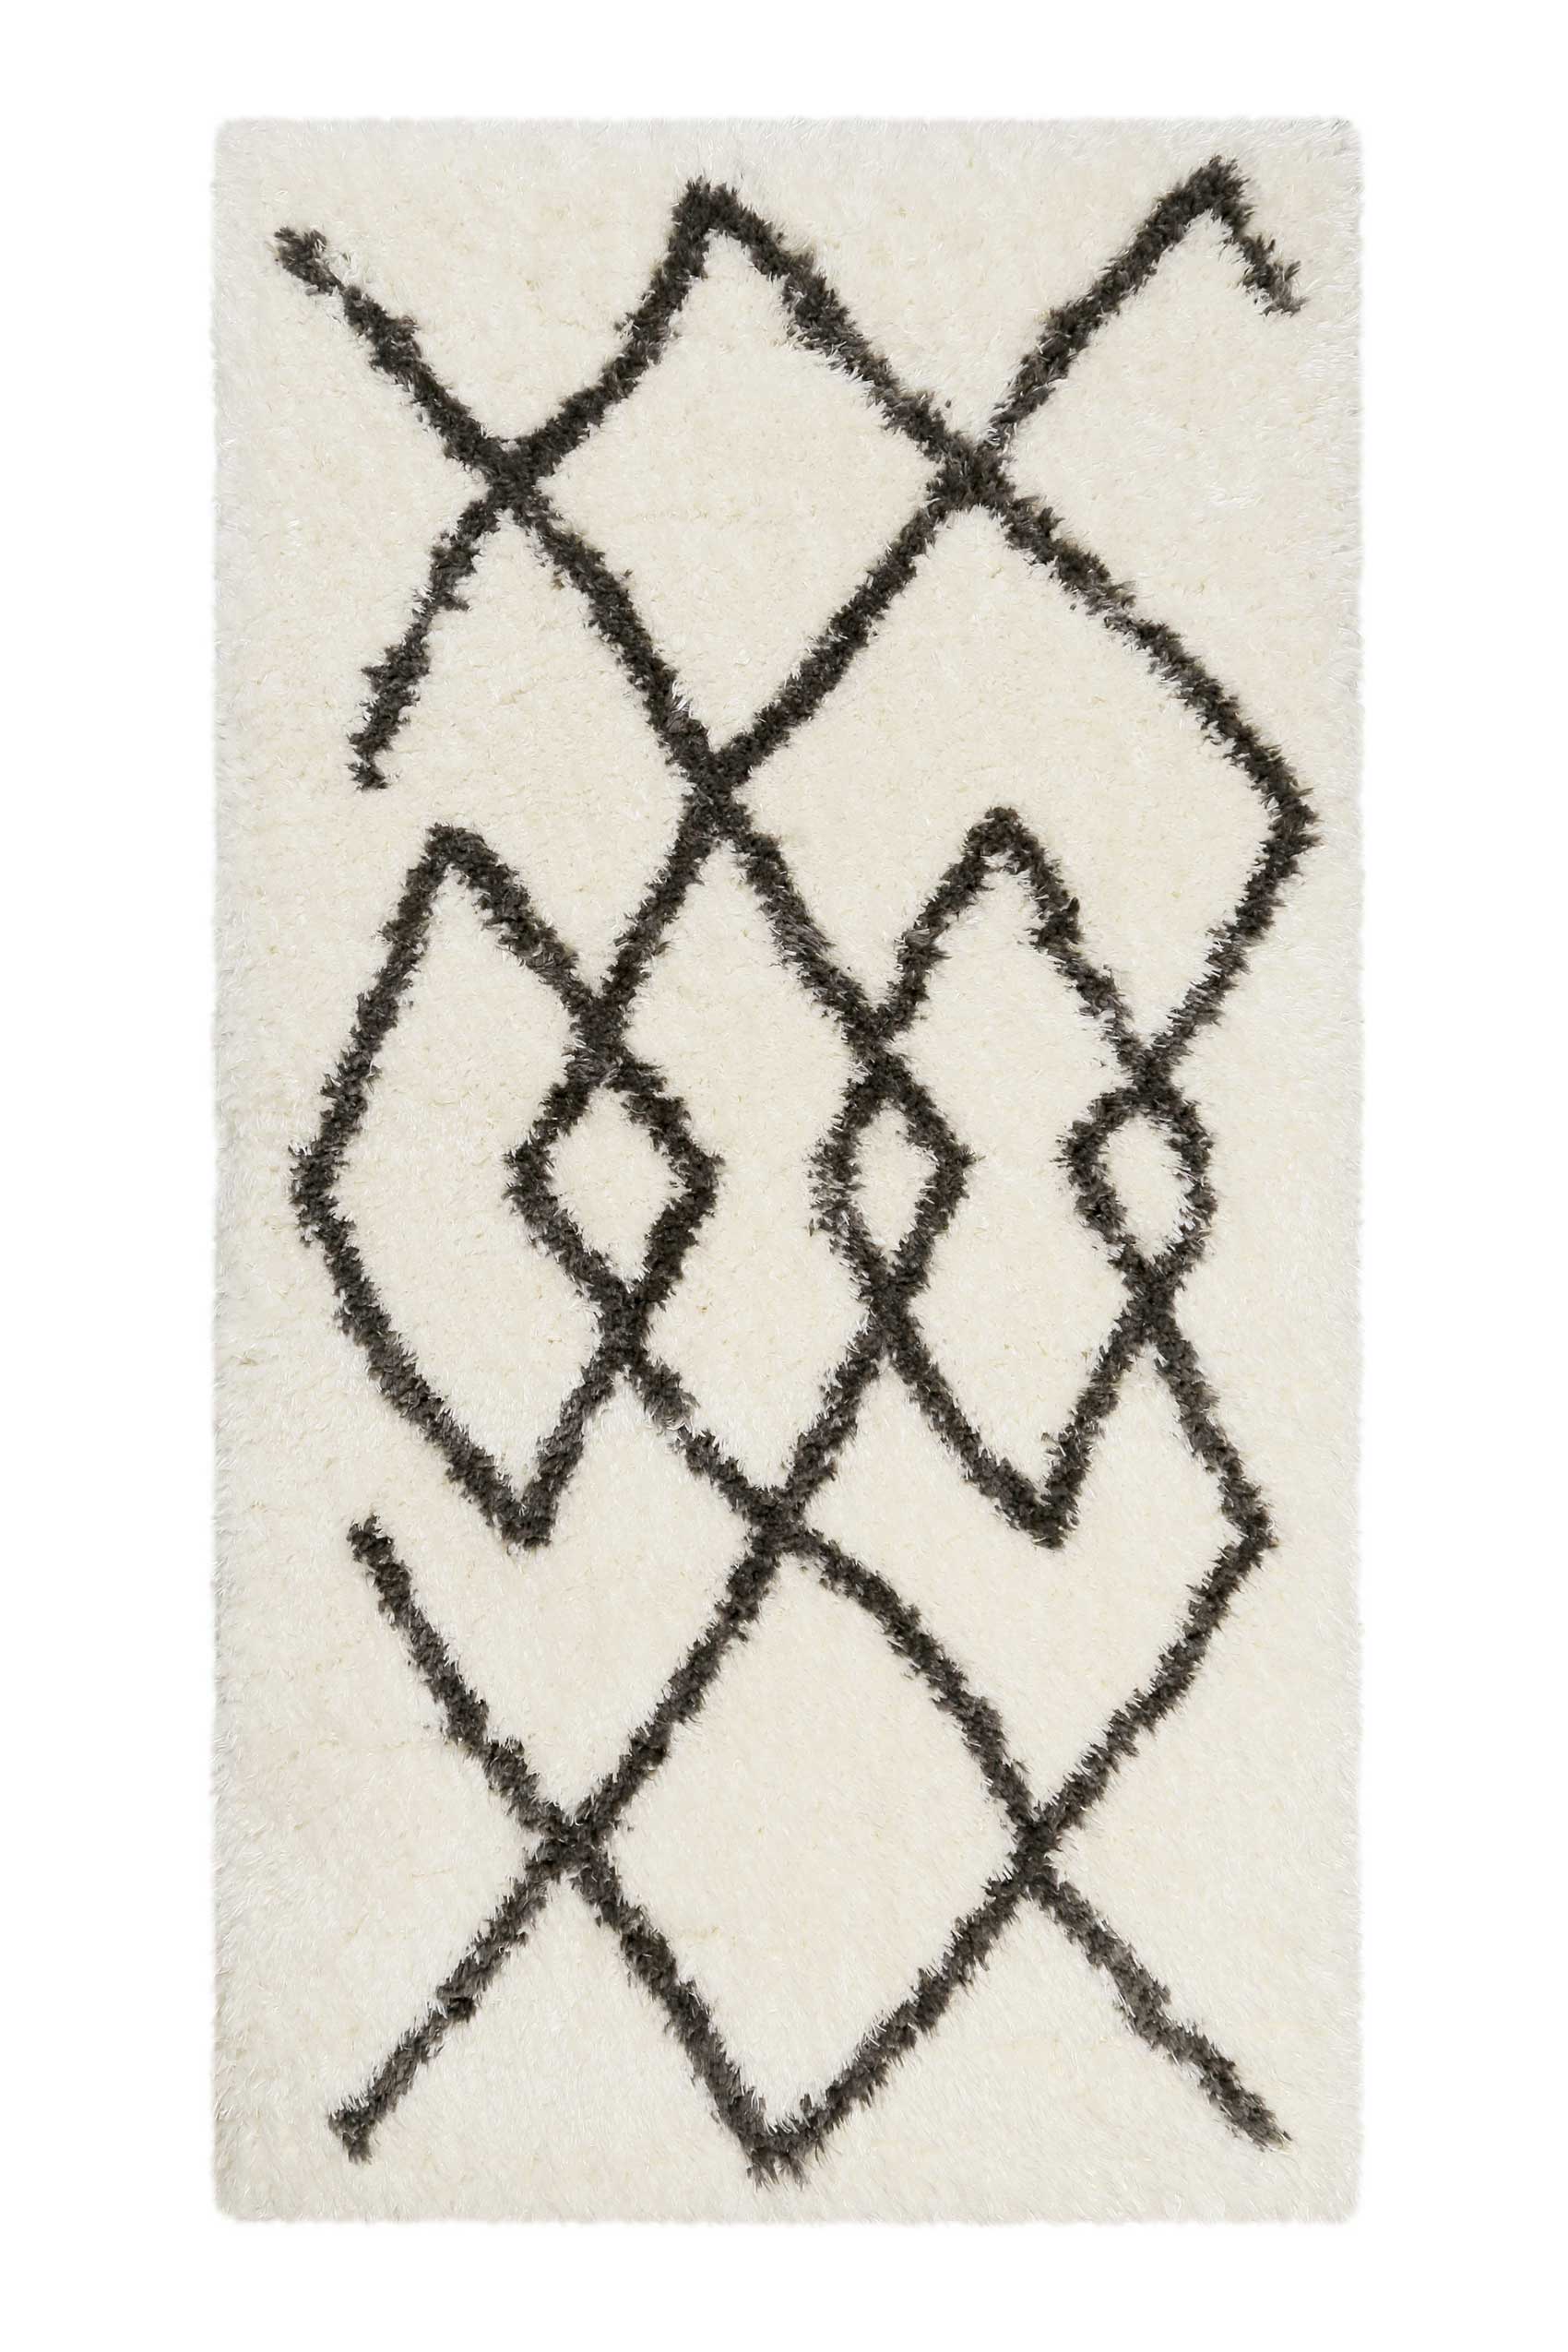 Teppich Creme Weiß Grau sehr flauschig & kuschelig » Afella « WECONhome - Ansicht 7